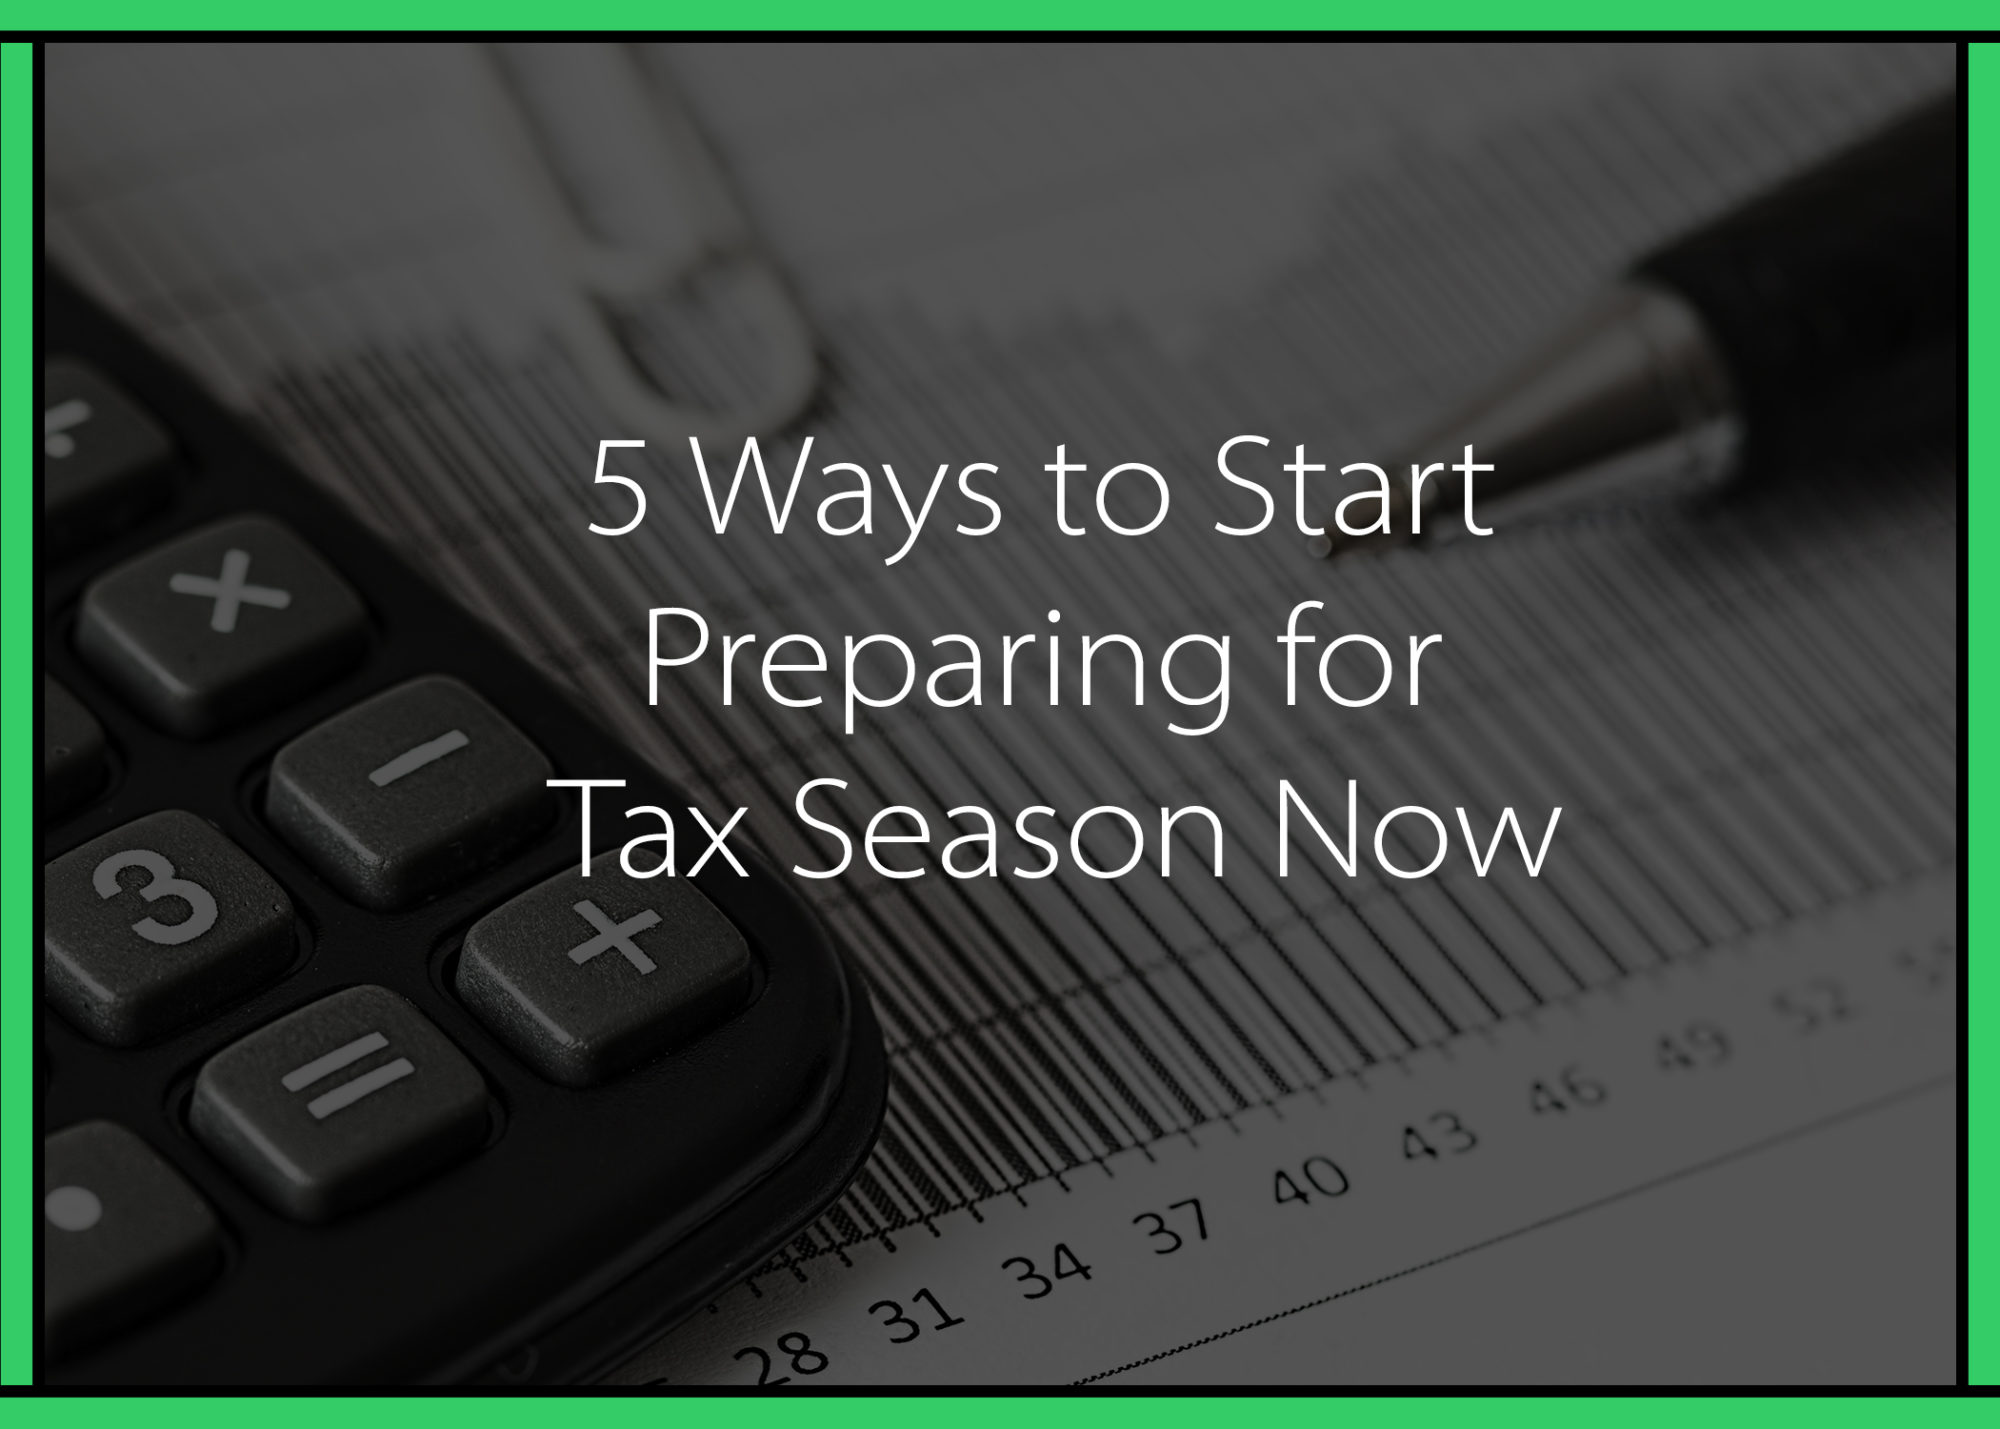 5 Ways to Start Preparing for Tax Season Now